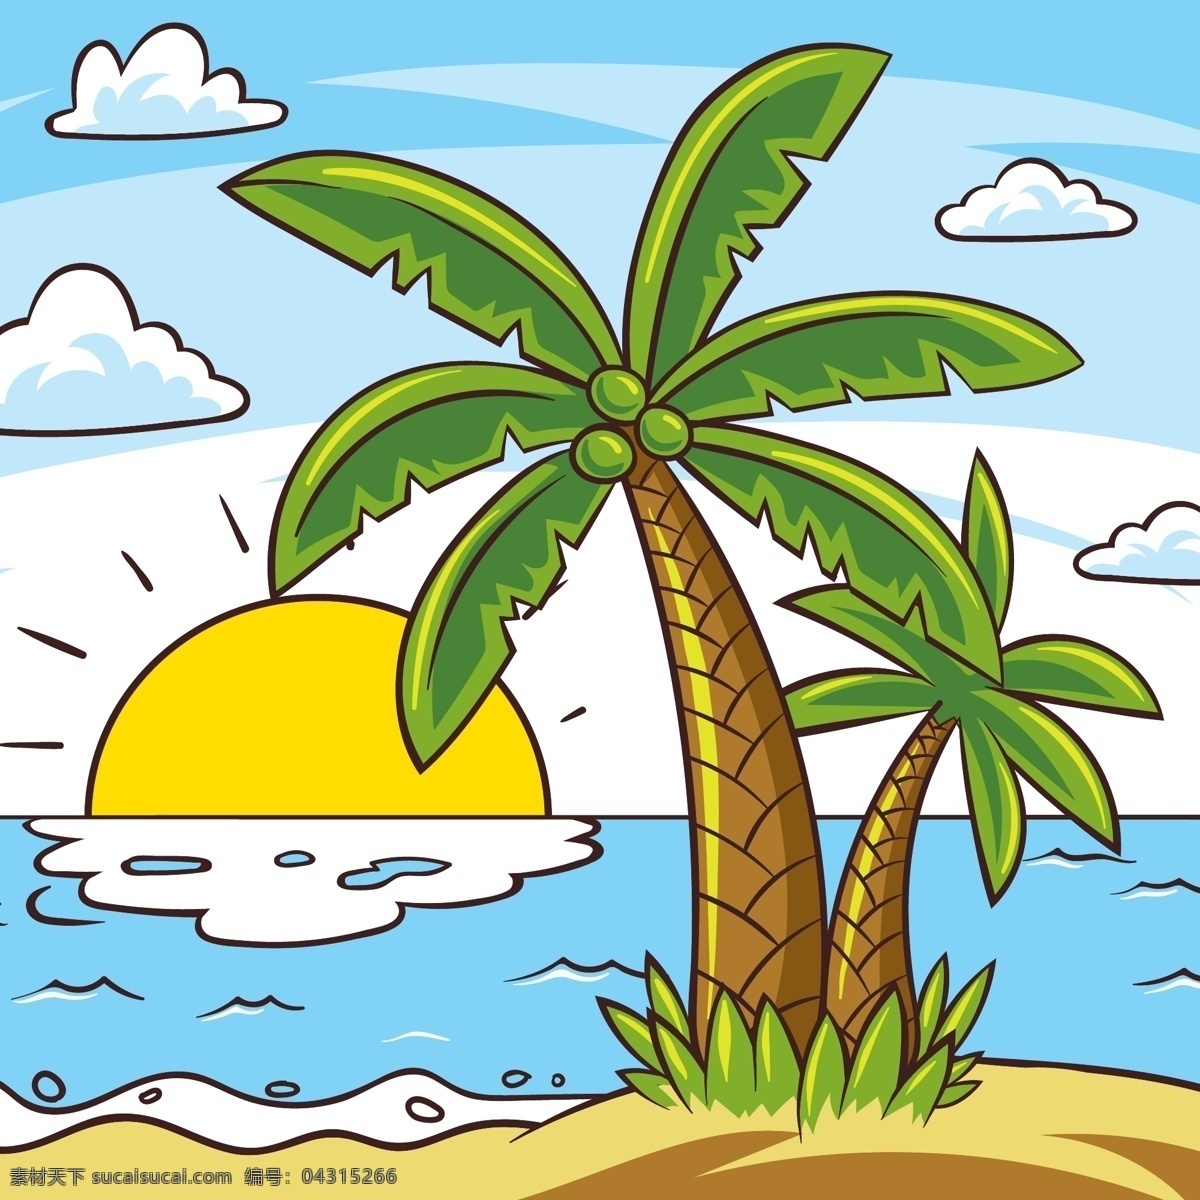 彩绘 棕榈树 大海 风景 矢量 太阳 岛屿 云朵 动漫动画 风景漫画